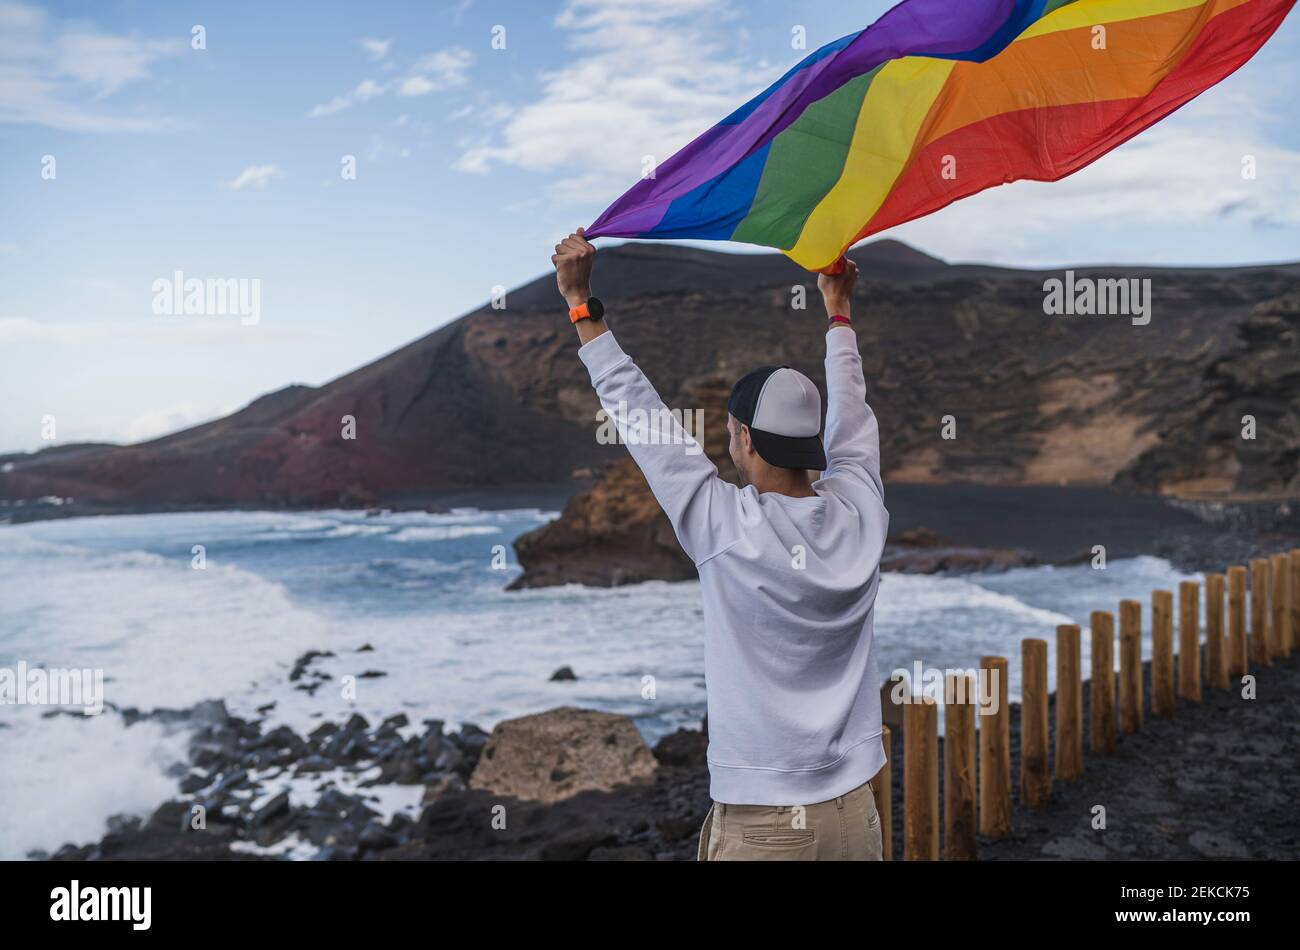 Un jeune touriste agite le drapeau arc-en-ciel tout en se tenant au point de vue El golfo, Lanzarote, Espagne Banque D'Images